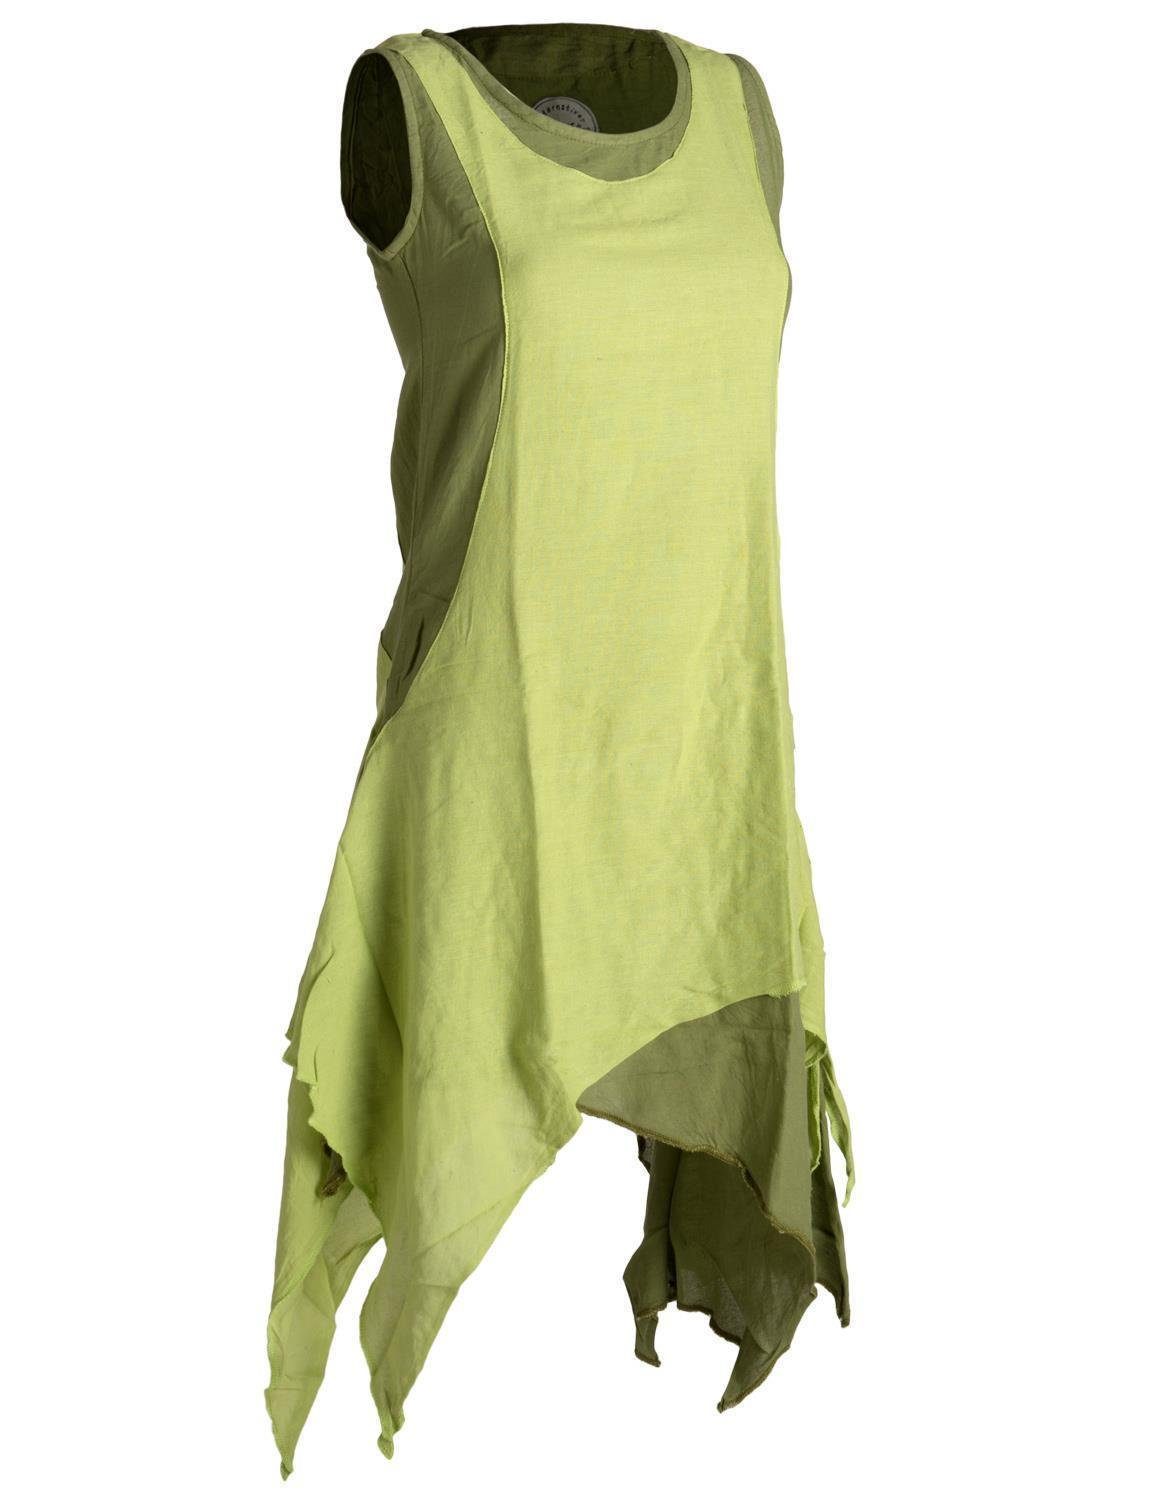 Vishes Sommerkleid Lagenlook Boho, handgewebte Ärmelloses Goa, olive-hellgrün Kleid Baumwolle Style Hippie